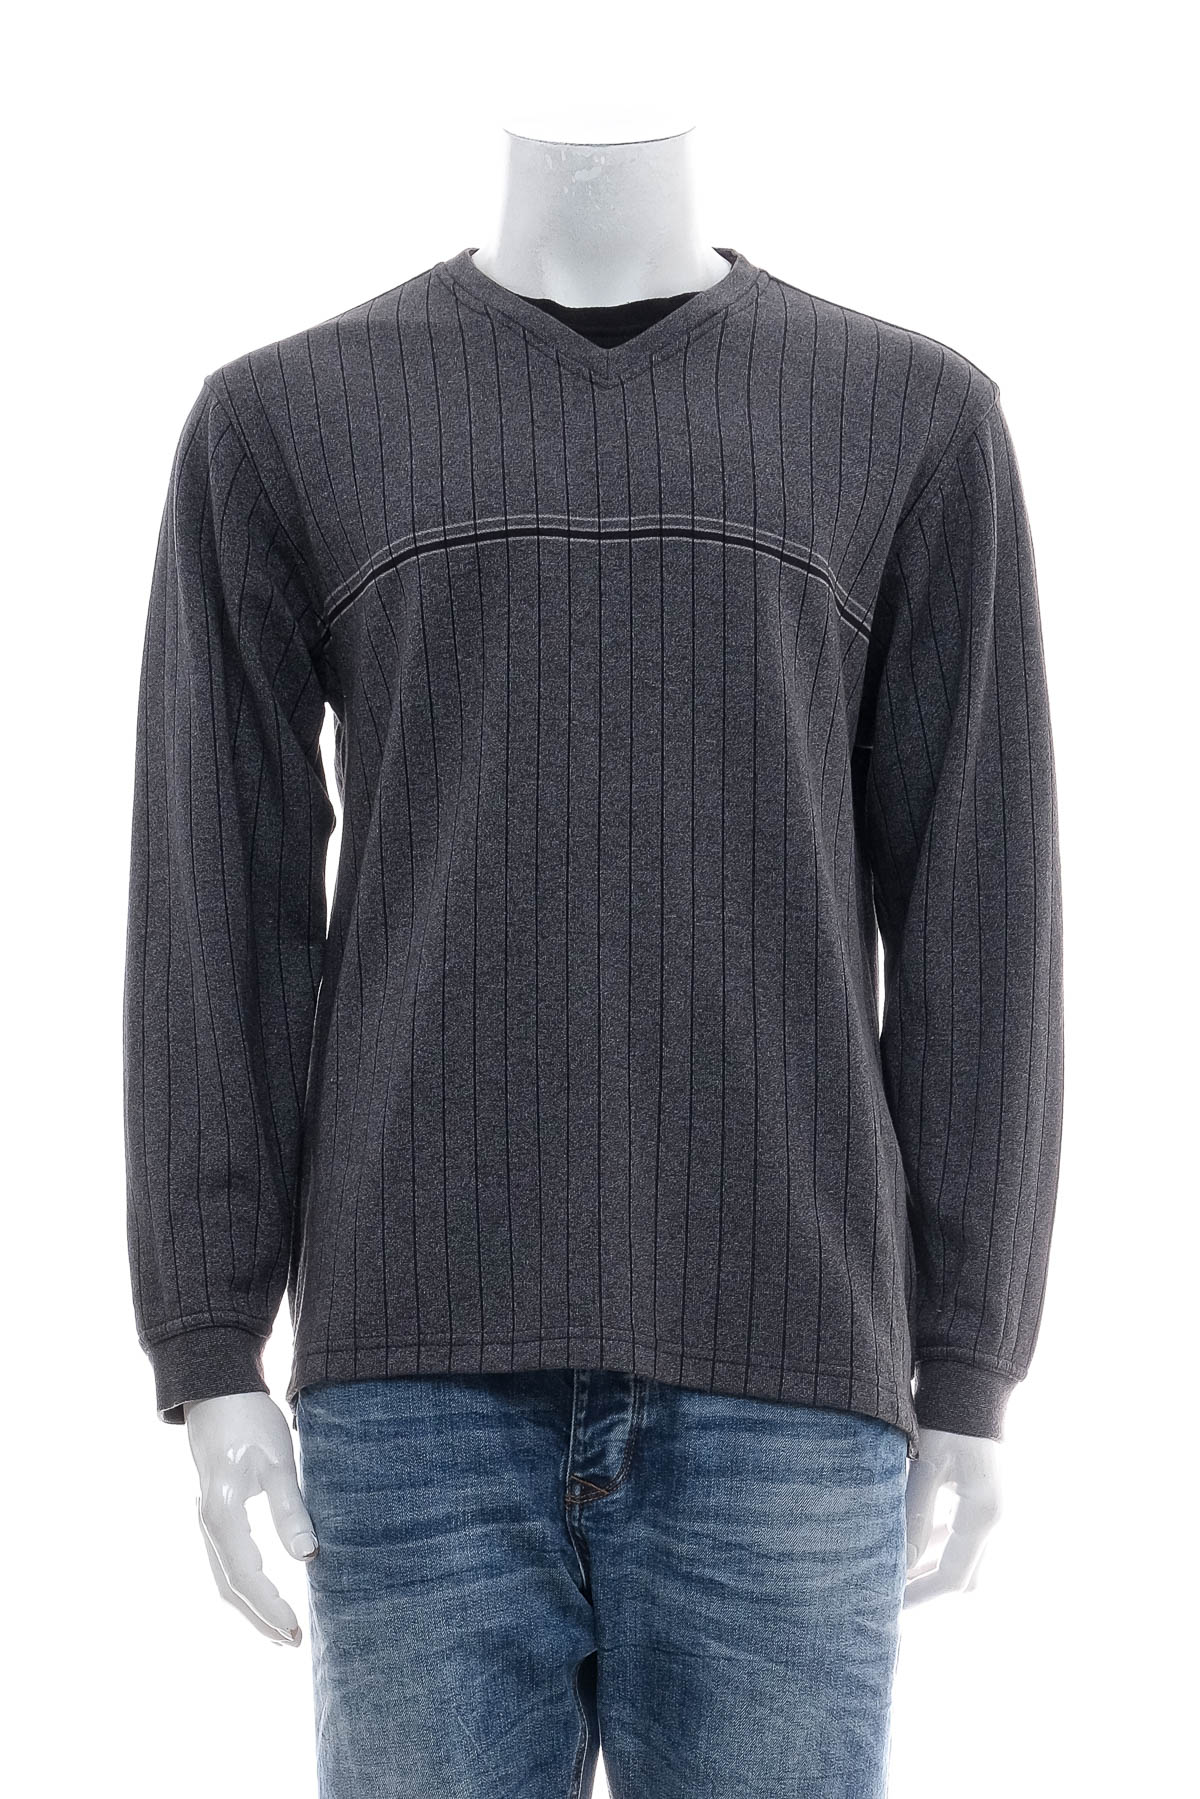 Men's sweater - Van Heusen - 0